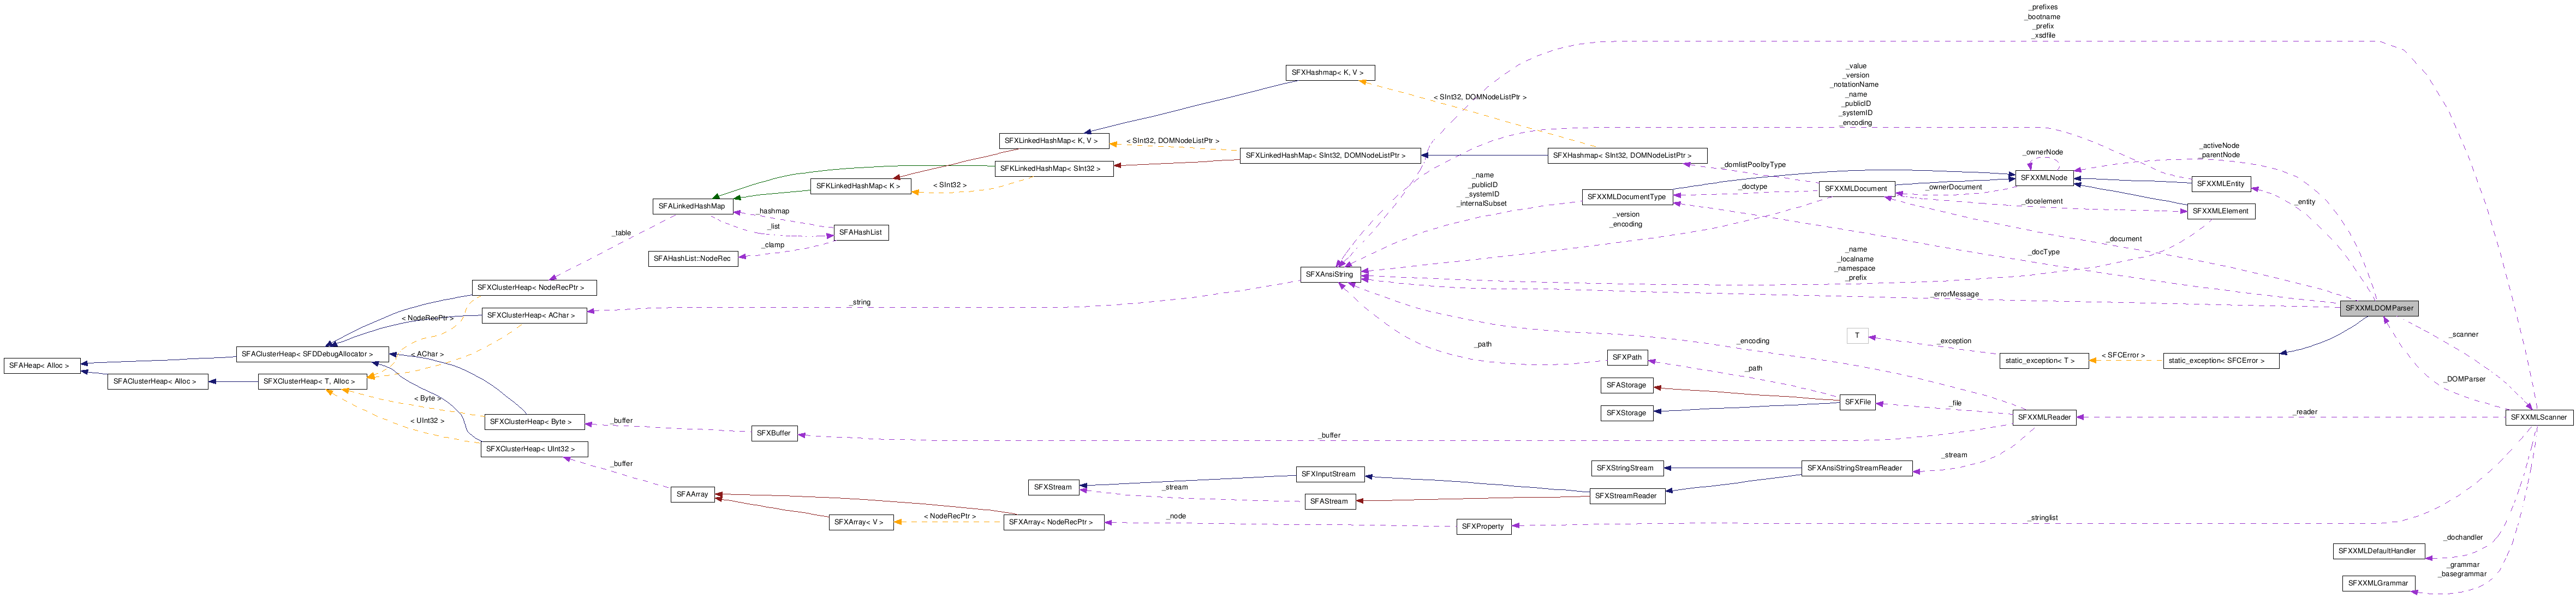 SFXXMLDOMParser クラスの協調図